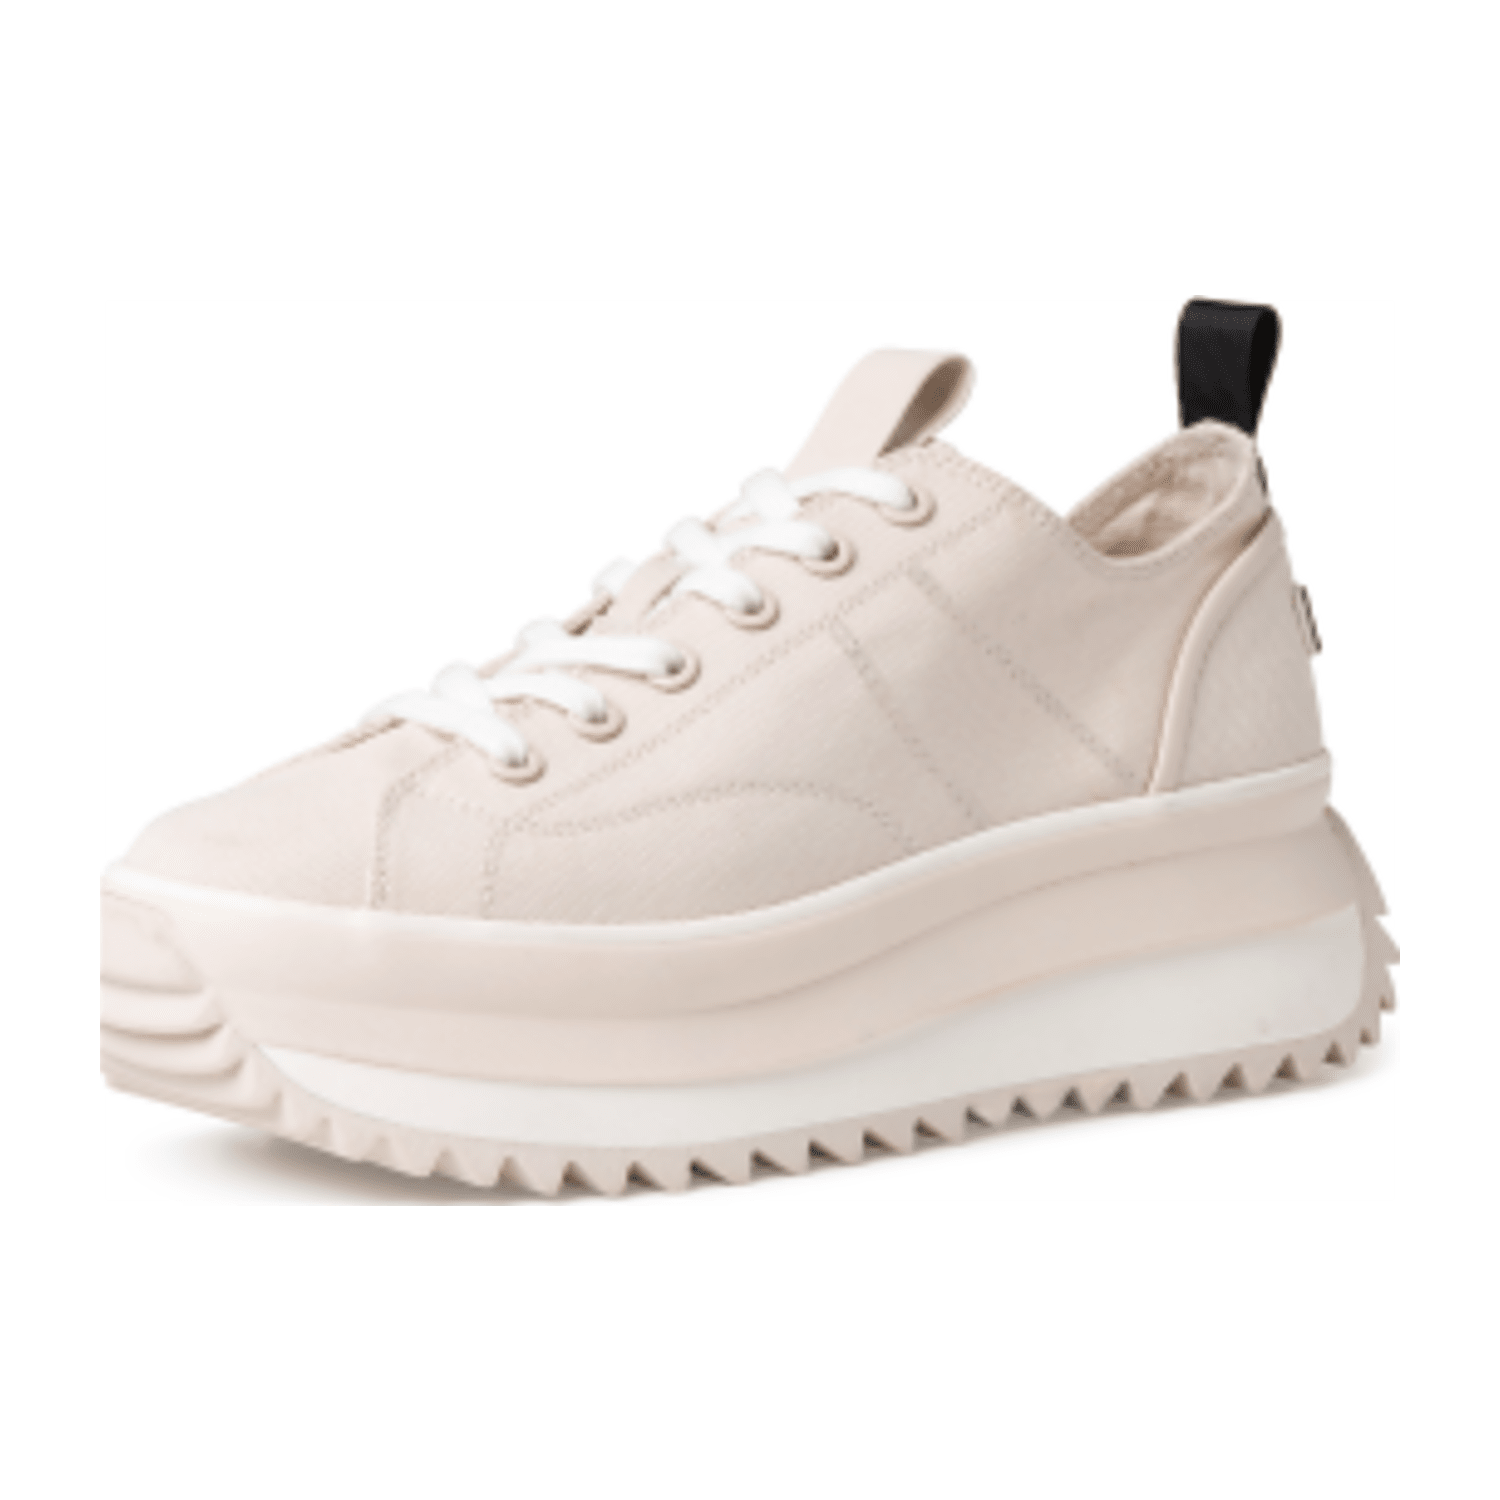 Tamaris Plateau Sneaker - 1-1-23731-20